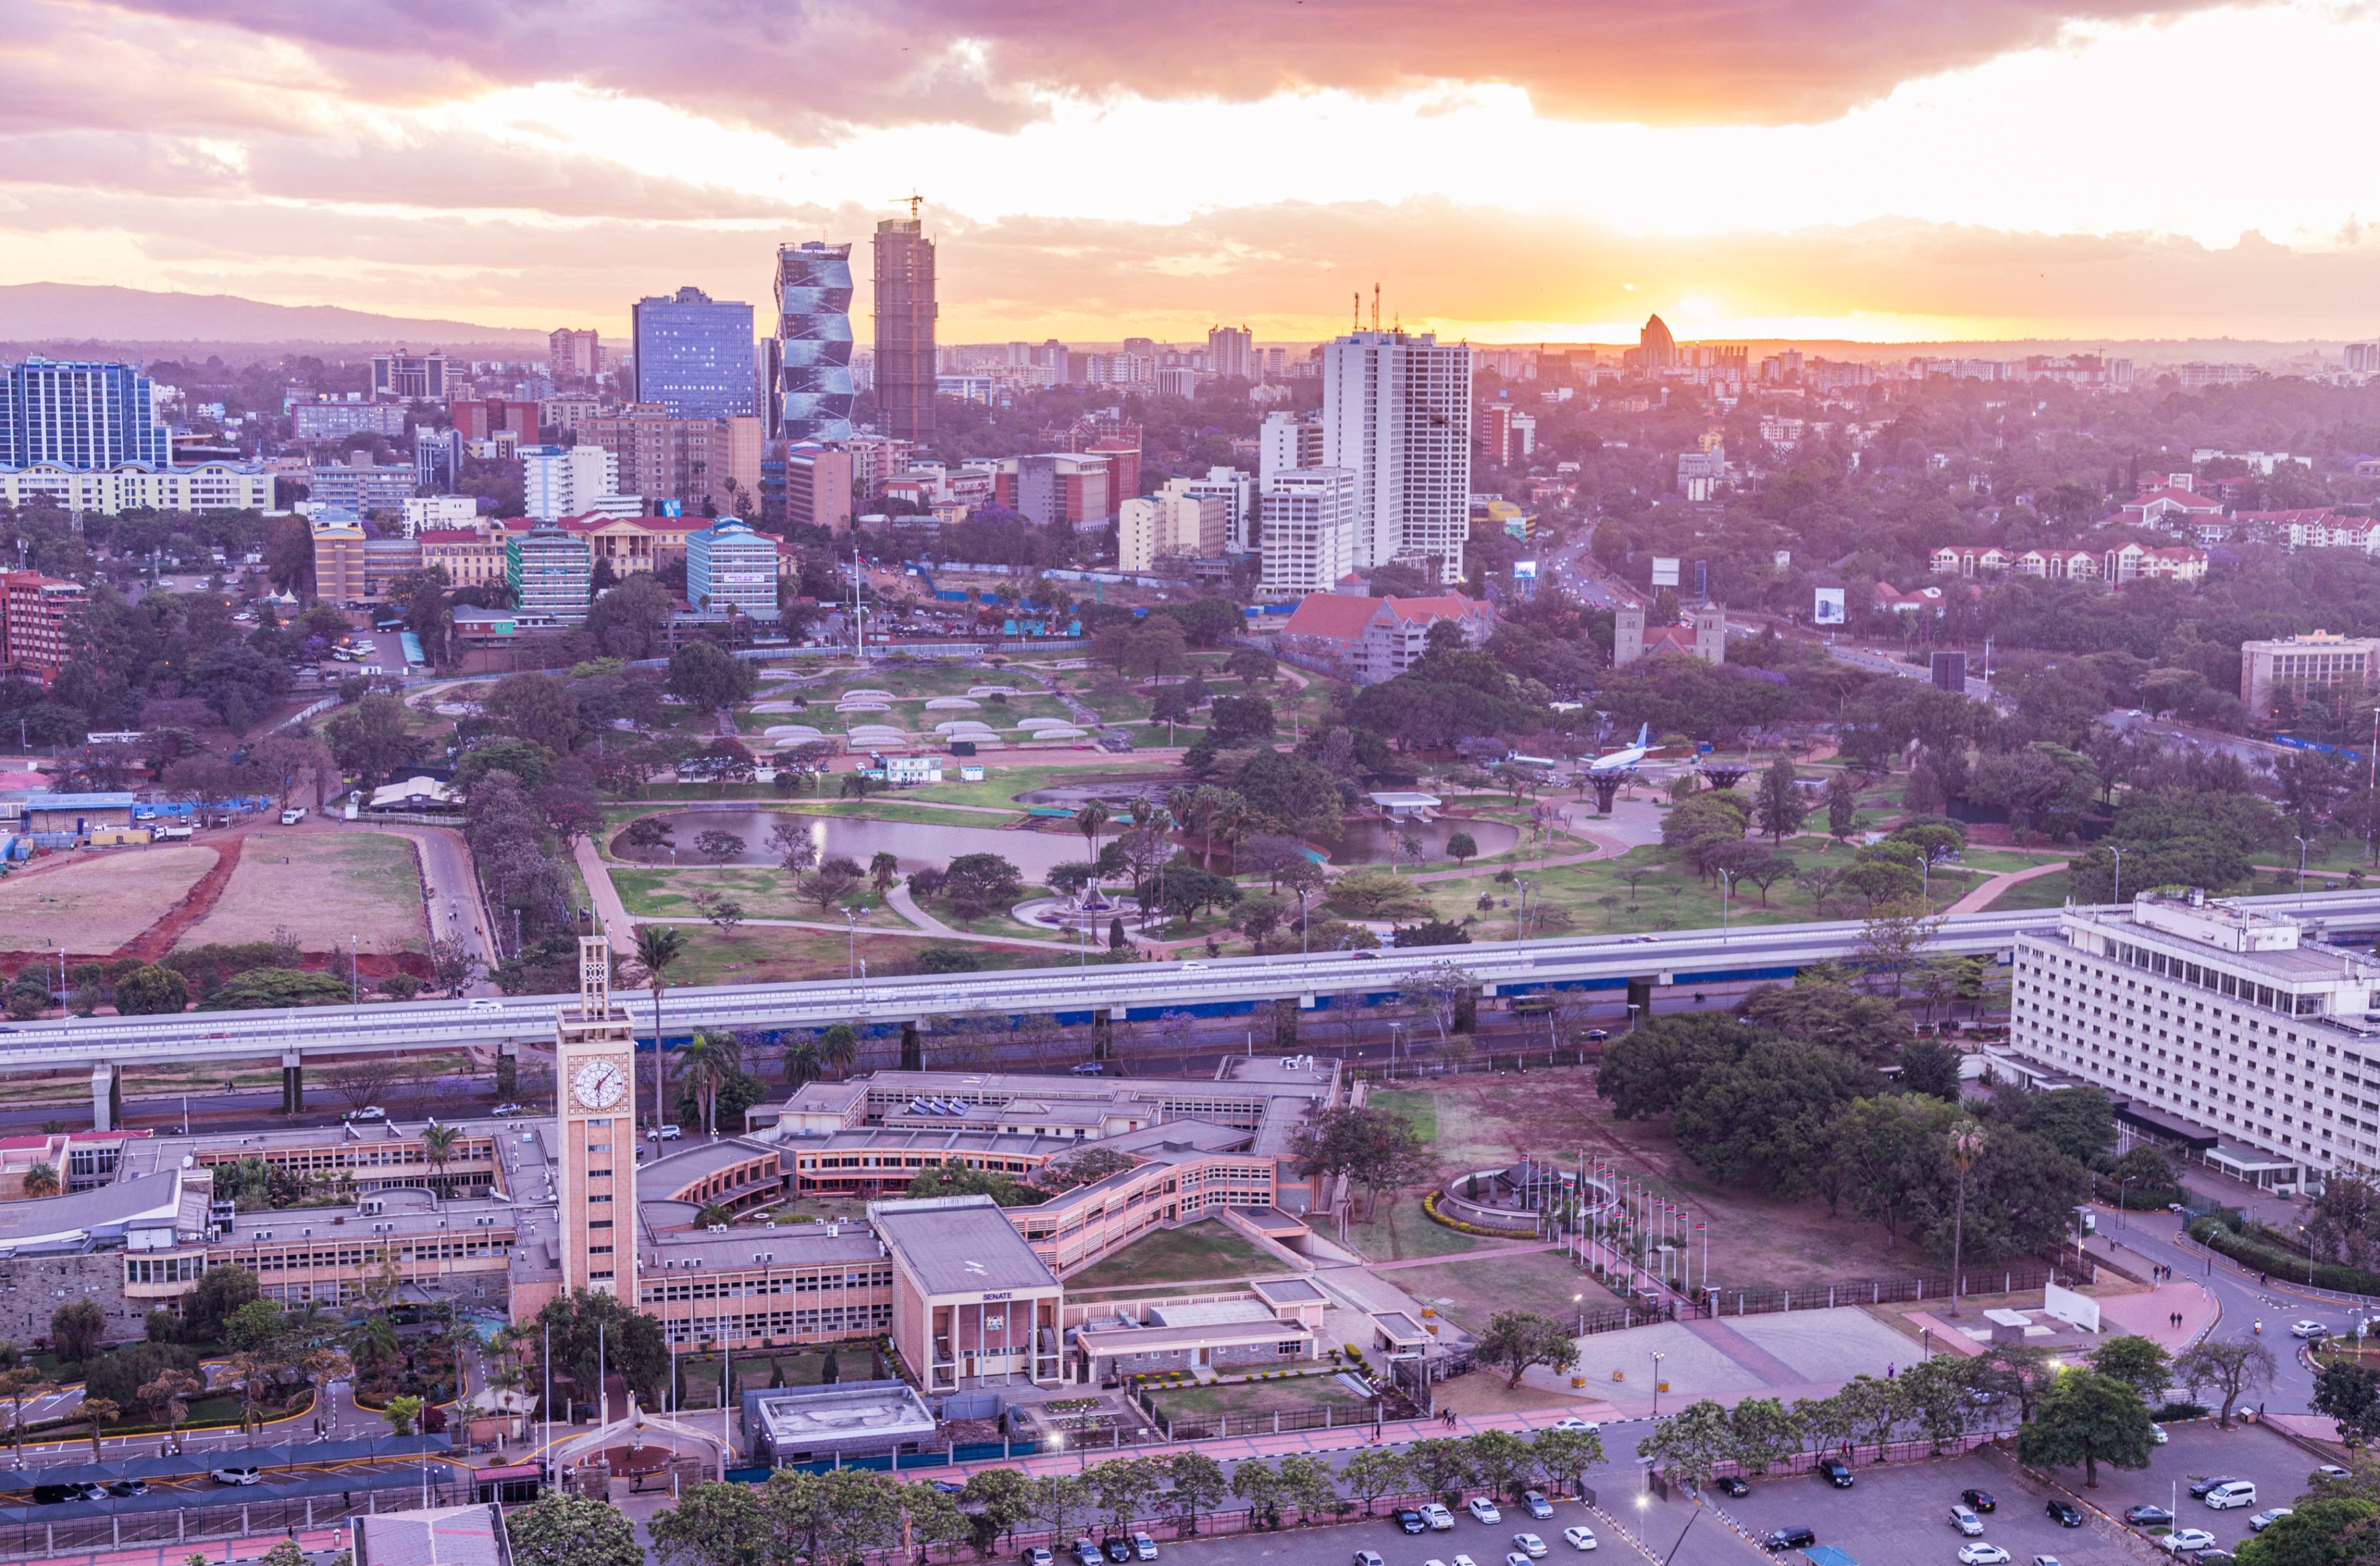 ¡Hola Nairobi!